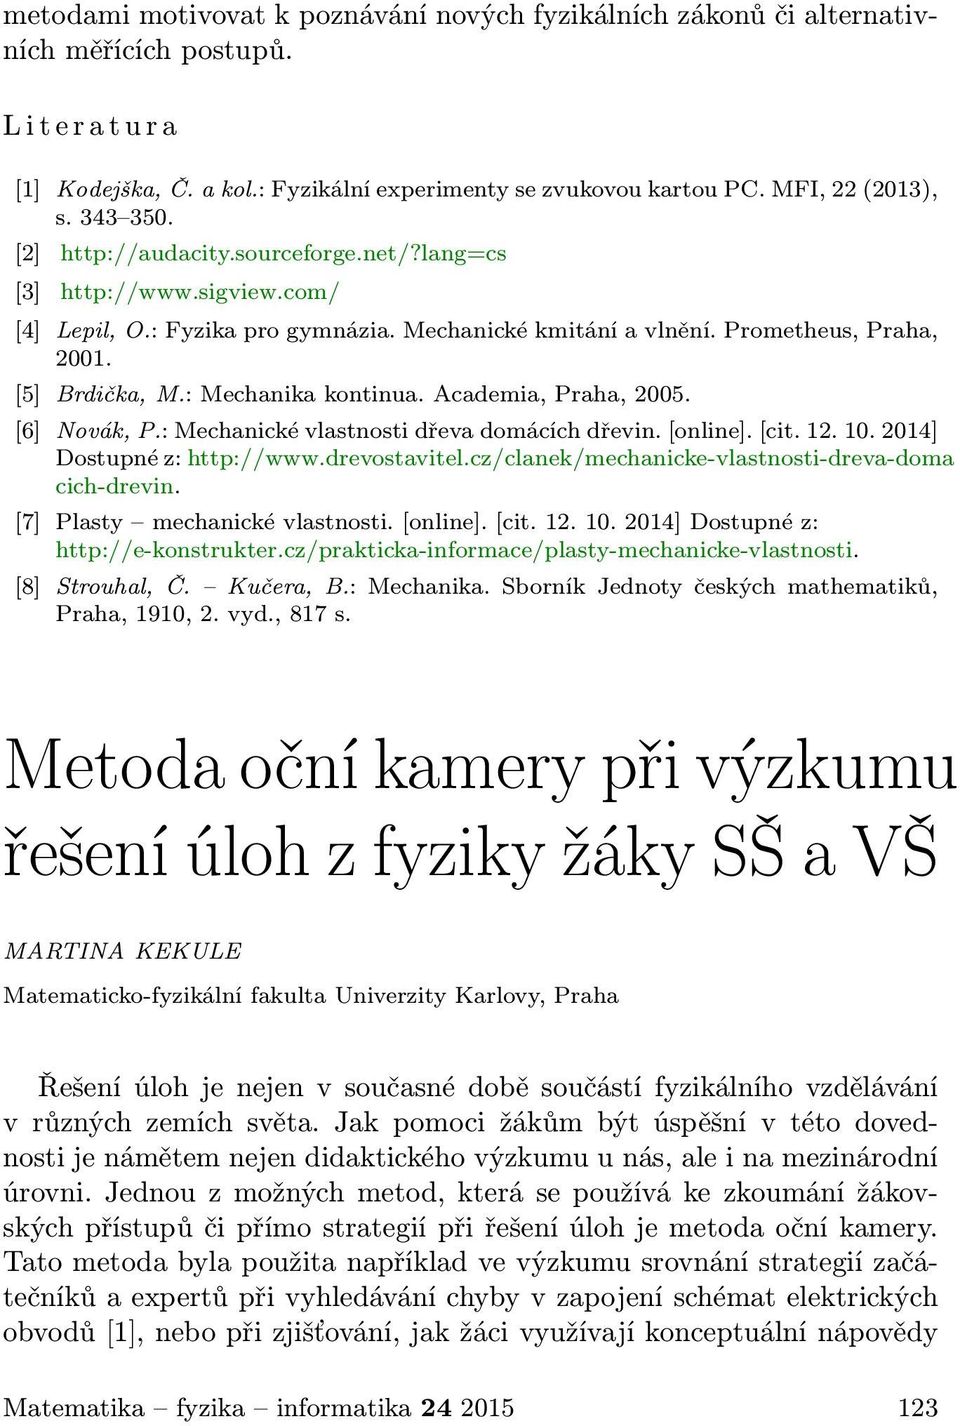 [5] Brdička, M.: Mechanika kontinua. Academia, Praha, 2005. [6] Novák, P.: Mechanické vlastnosti dřeva domácích dřevin. [online]. [cit. 12. 10. 2014] Dostupné z: http://www.drevostavitel.